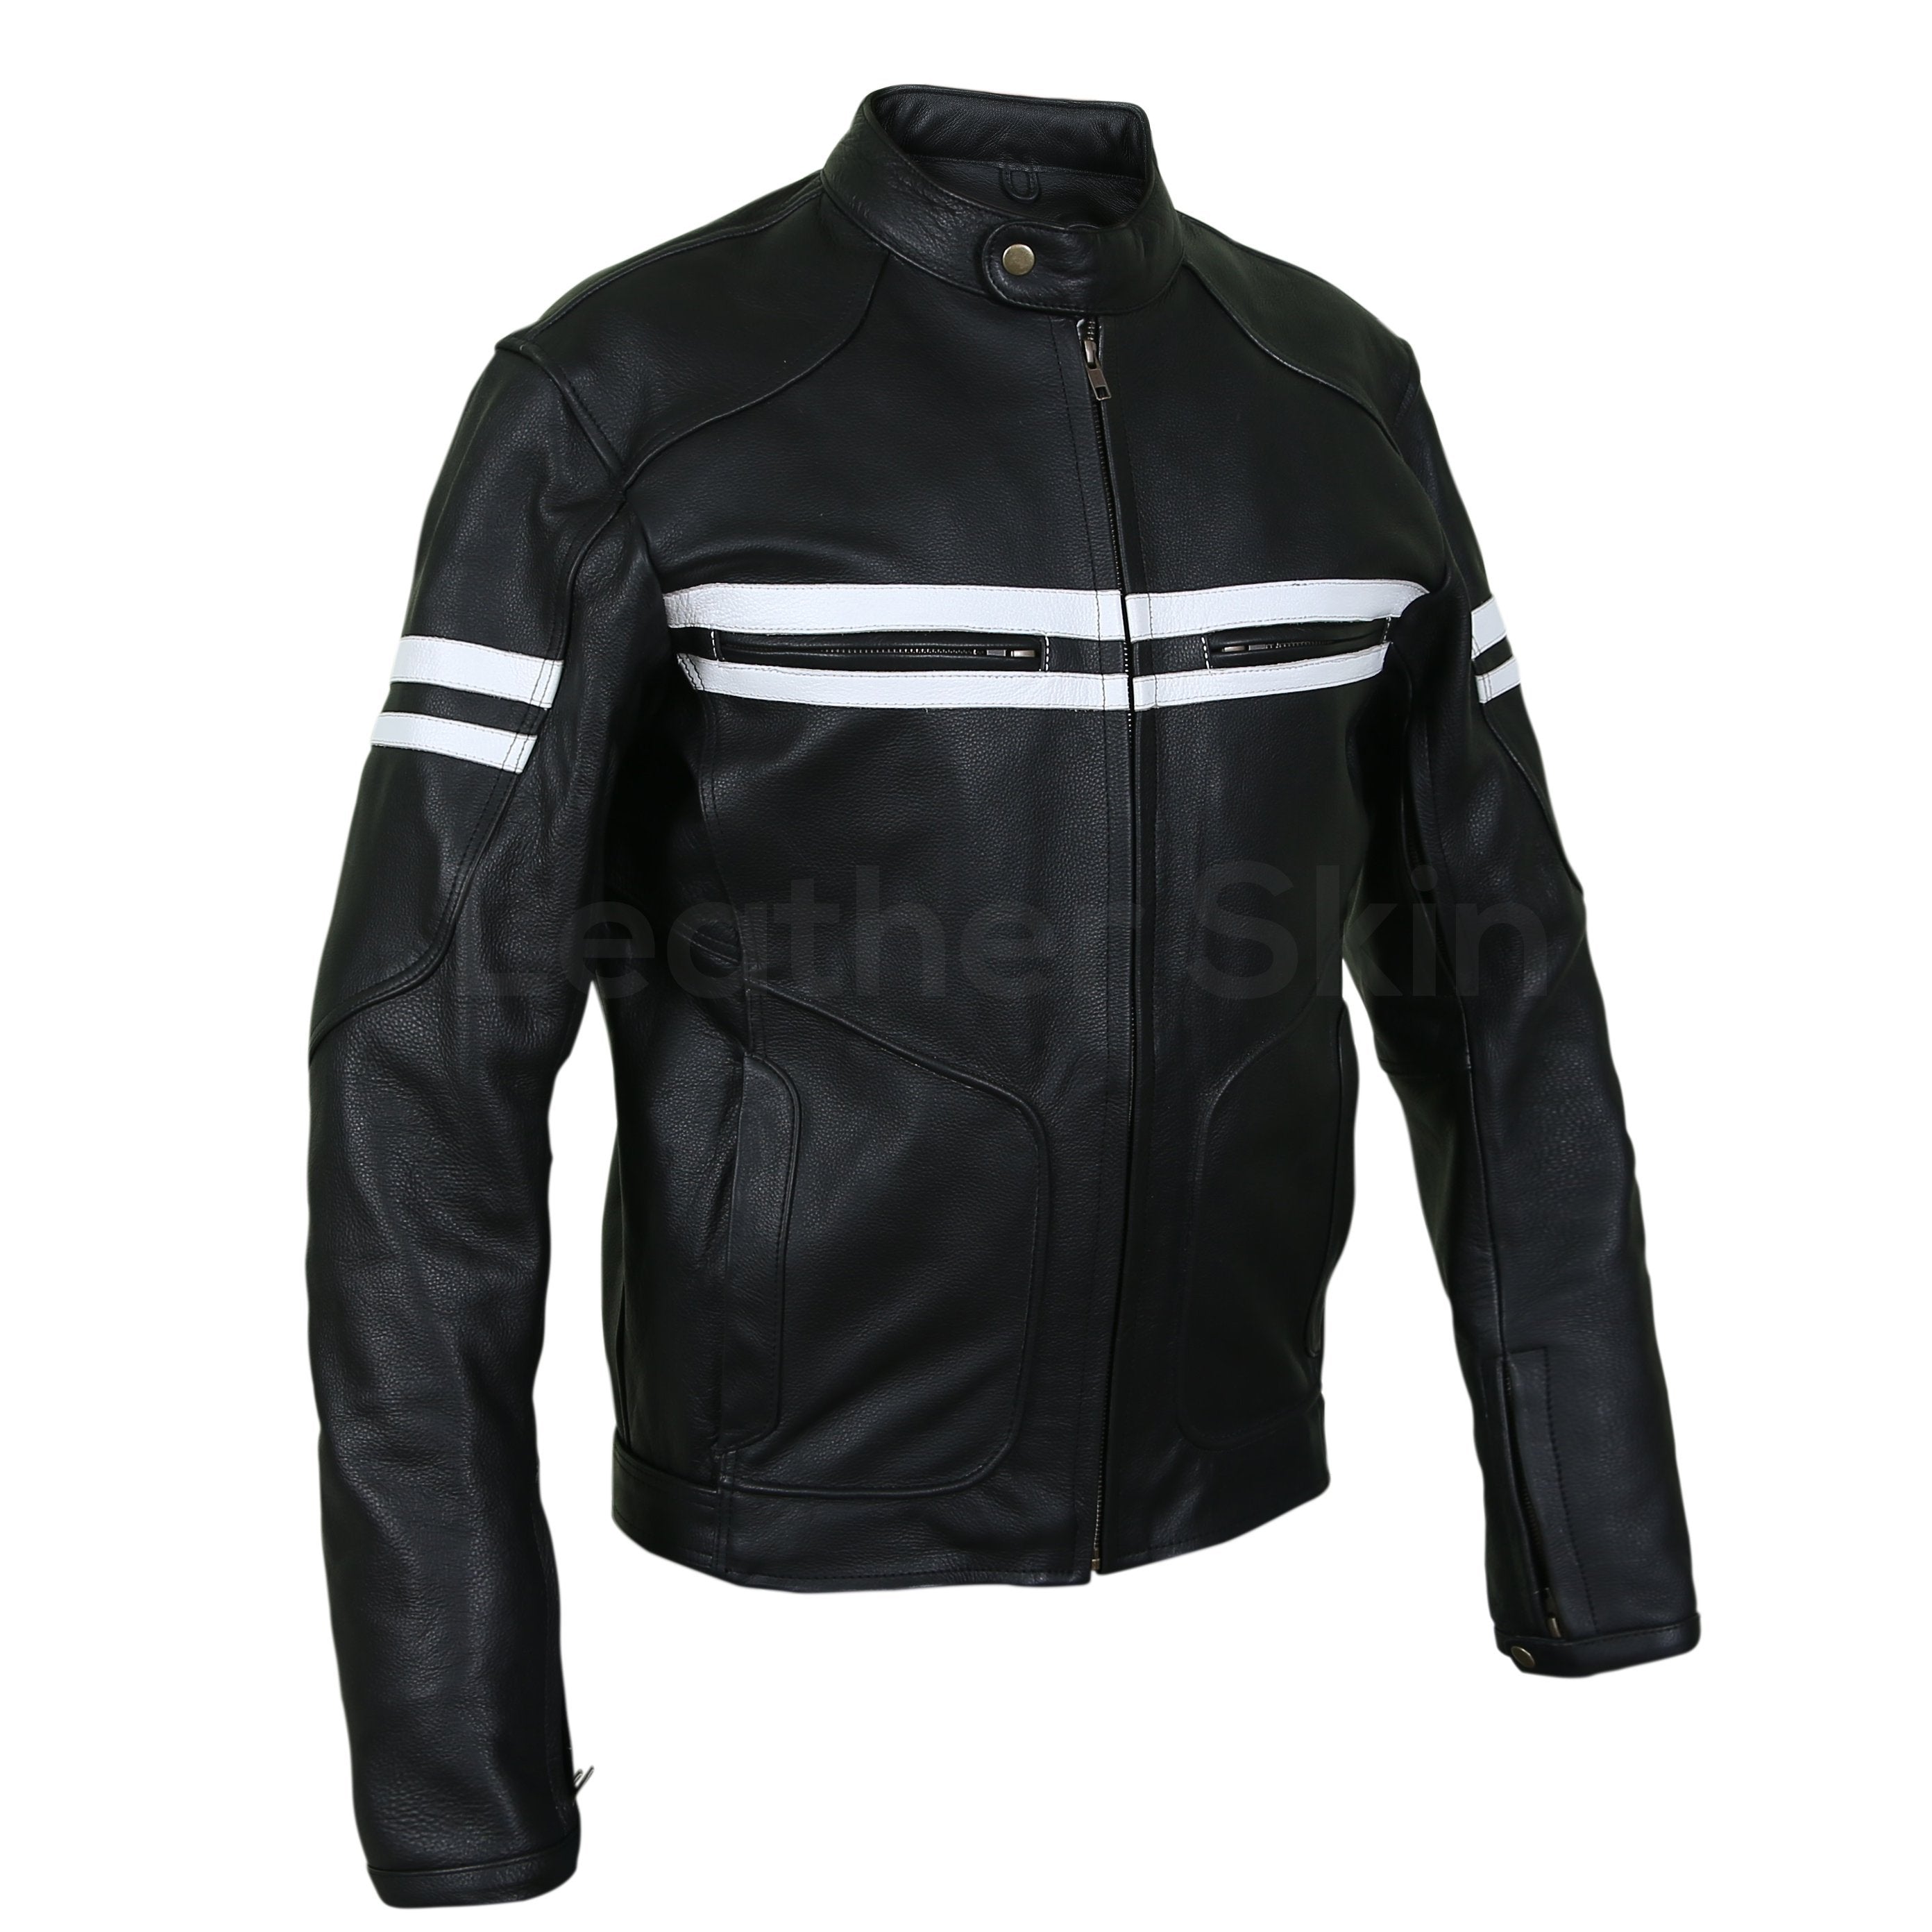 Leather Skin Black Motorcycle Biker Racing Premium Genuine Leather Jacket